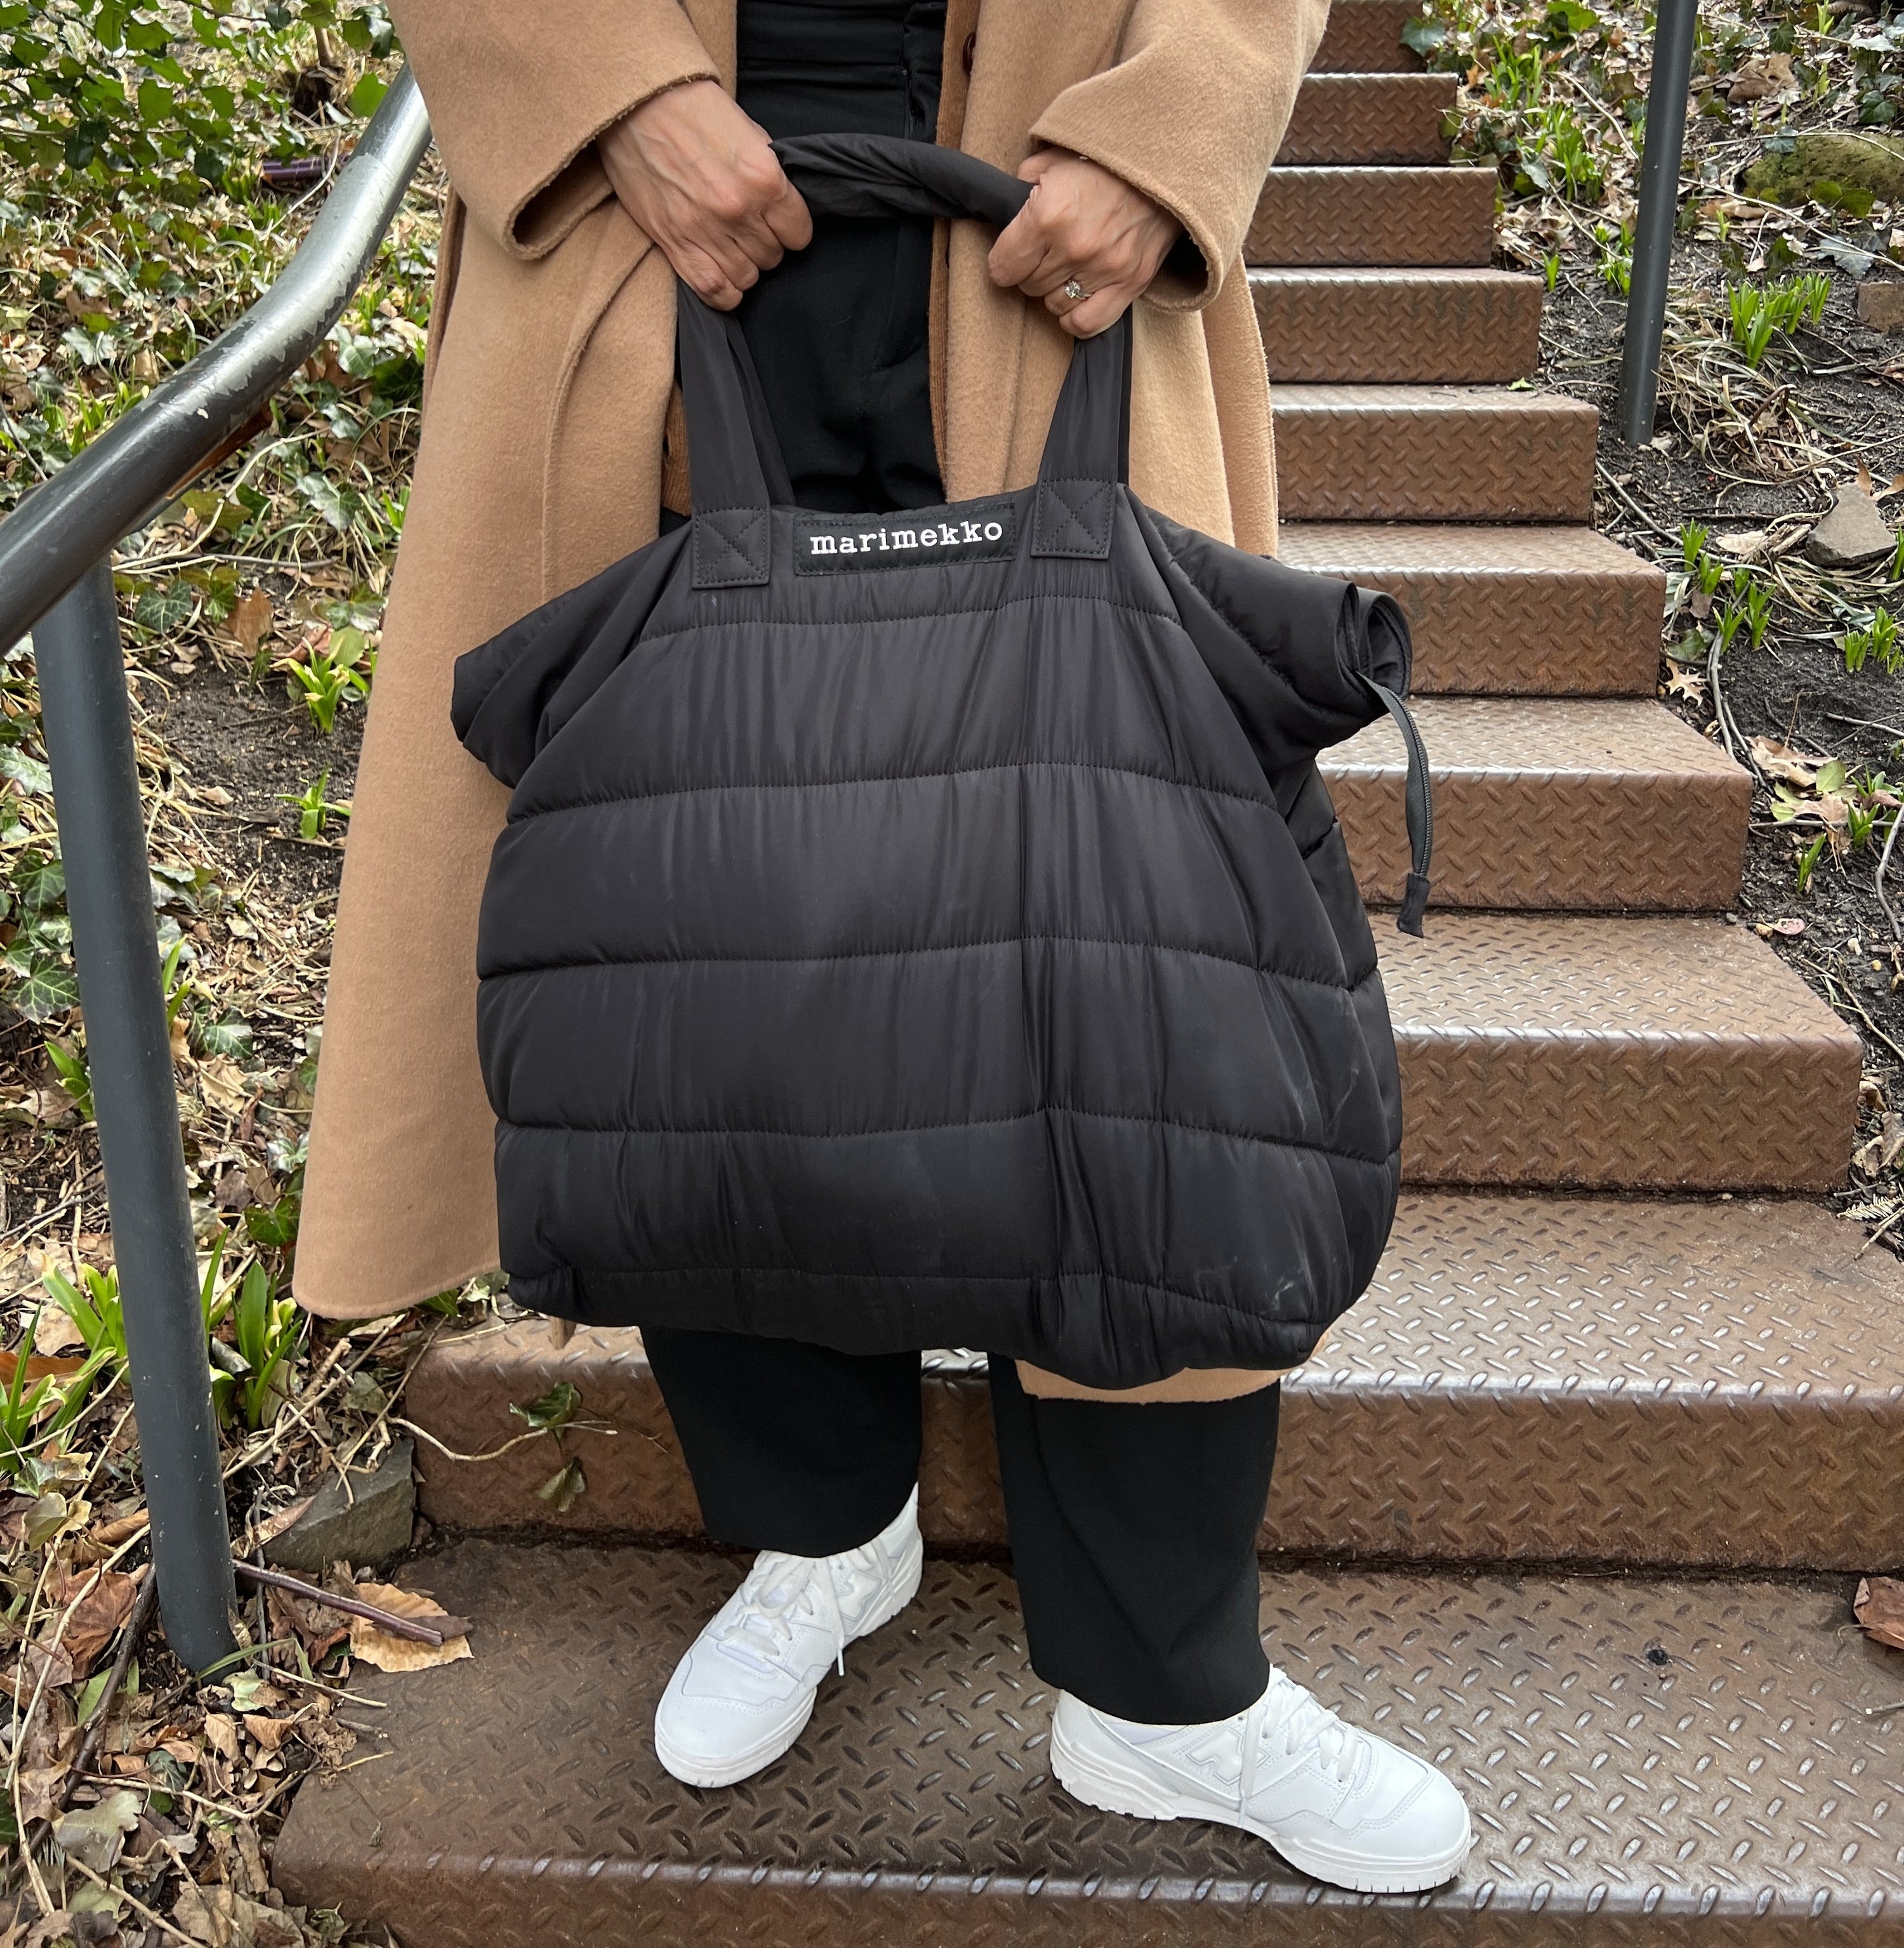 Soft black carry all bag with white Marimekko logo